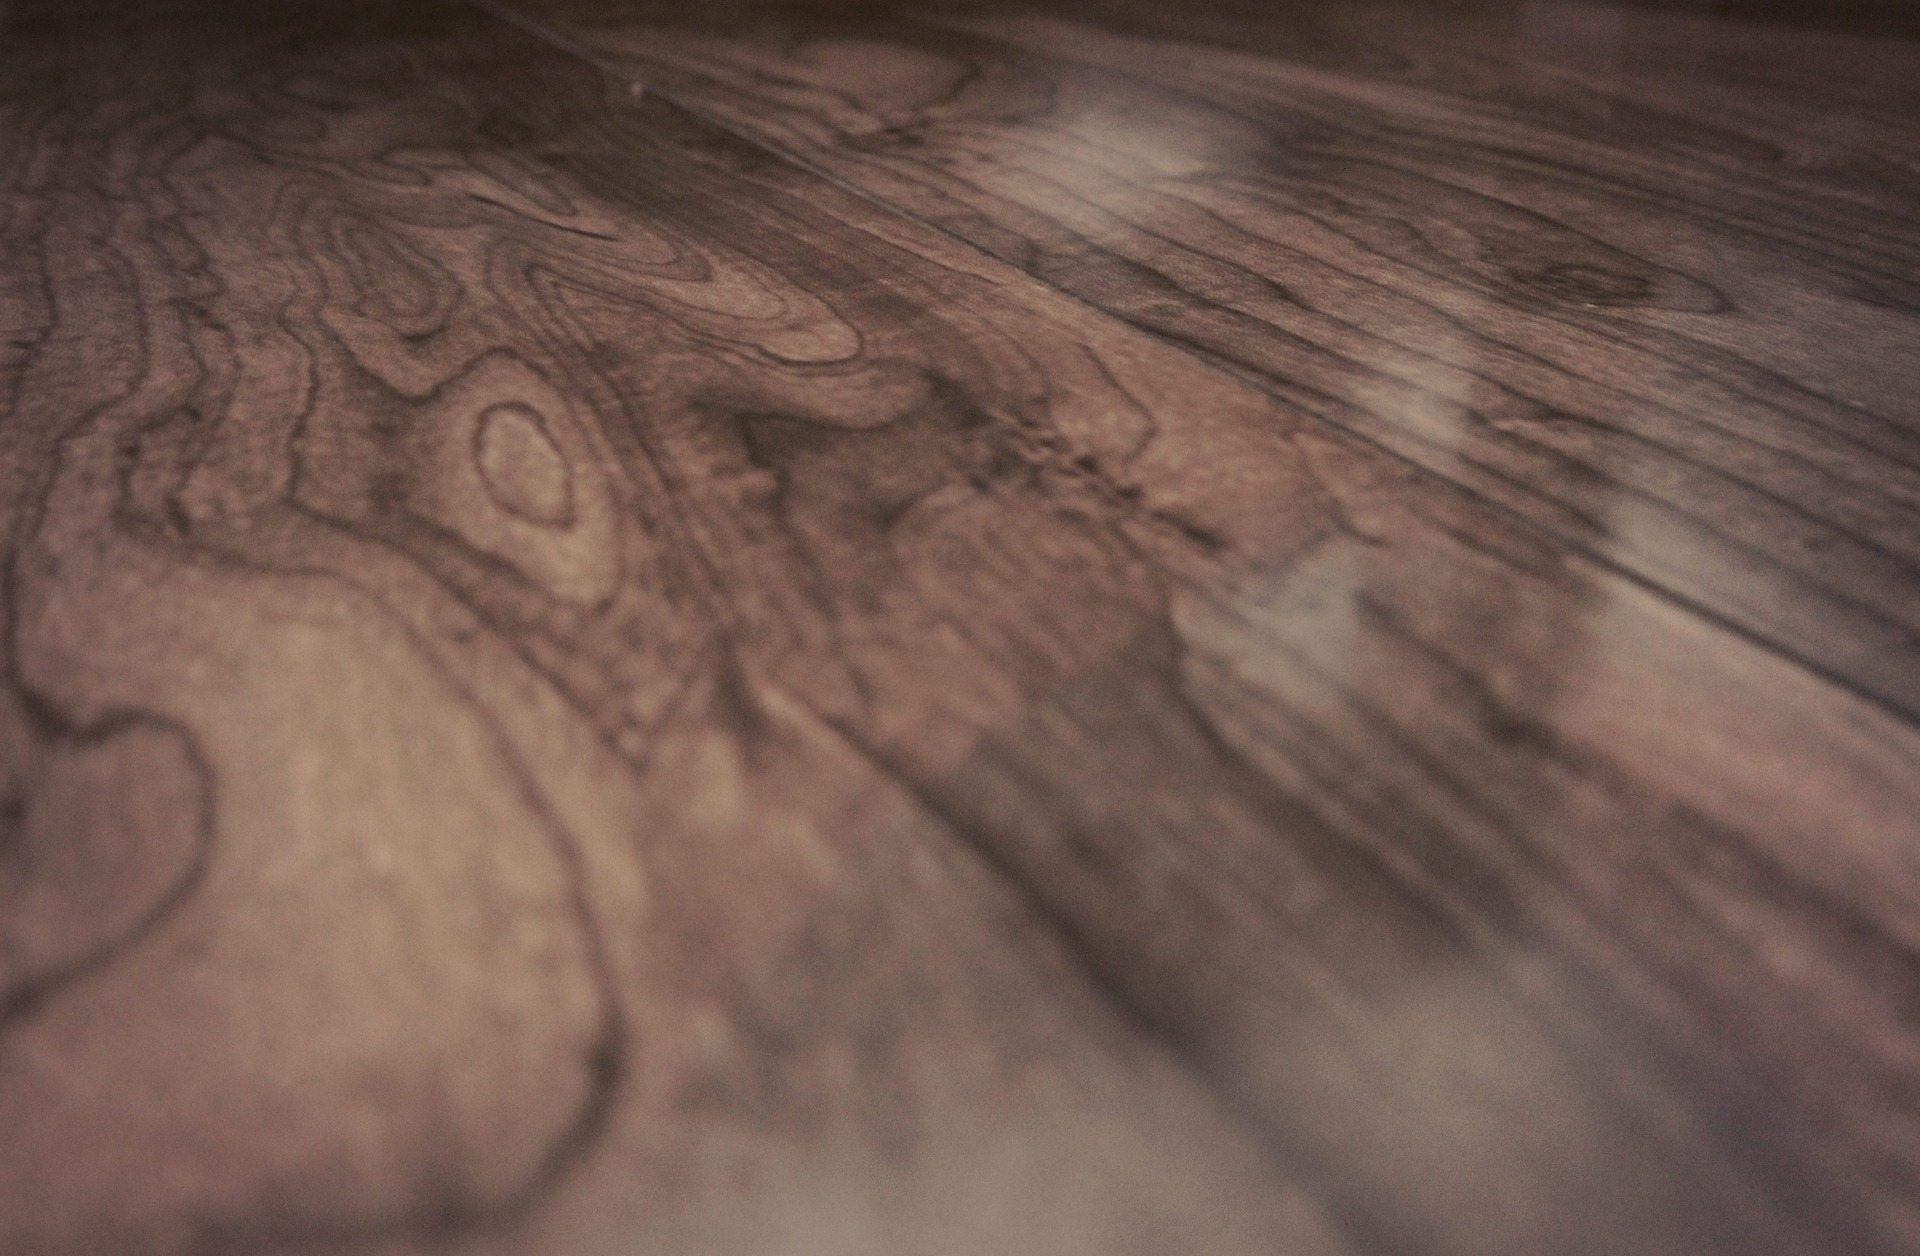 Finding Hardwoods Beneath Your Current Flooring